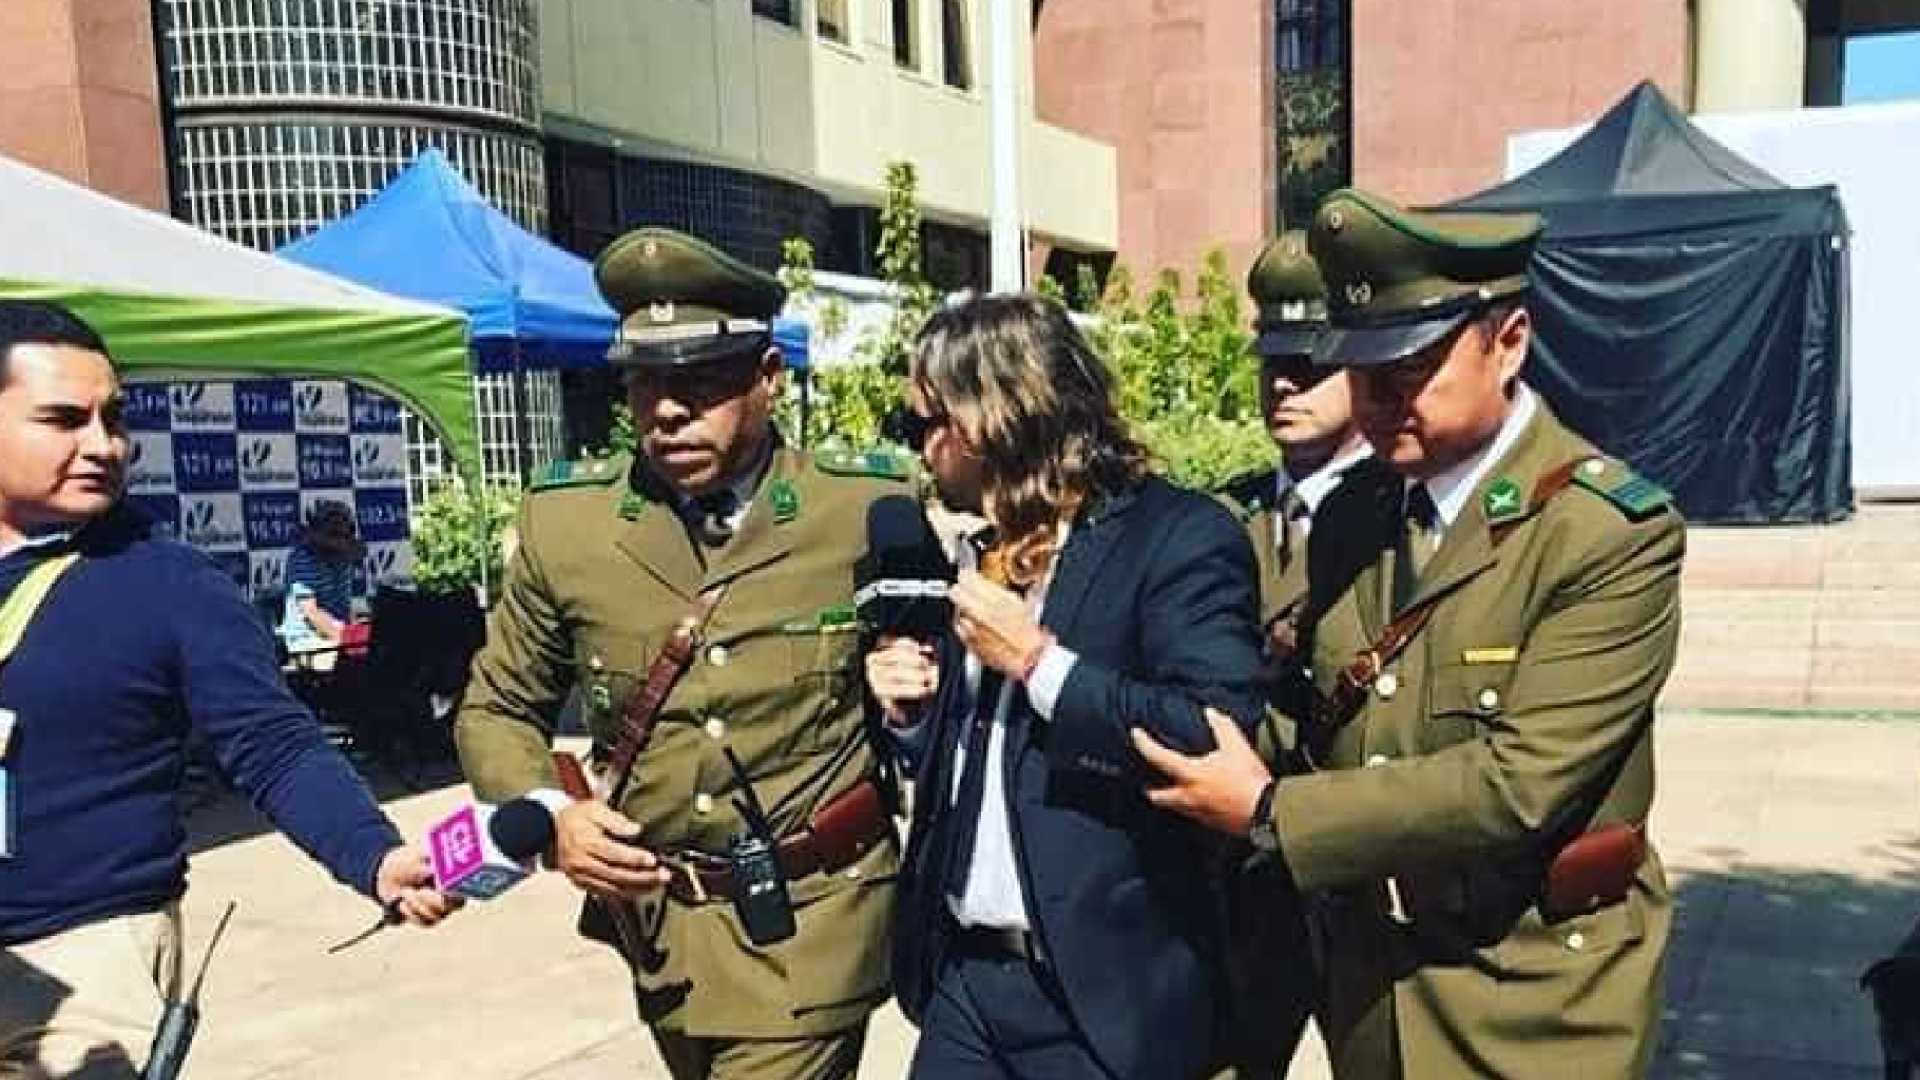 Repórter do CQC no Chile é expulso ao questionar Temer sobre corrupção